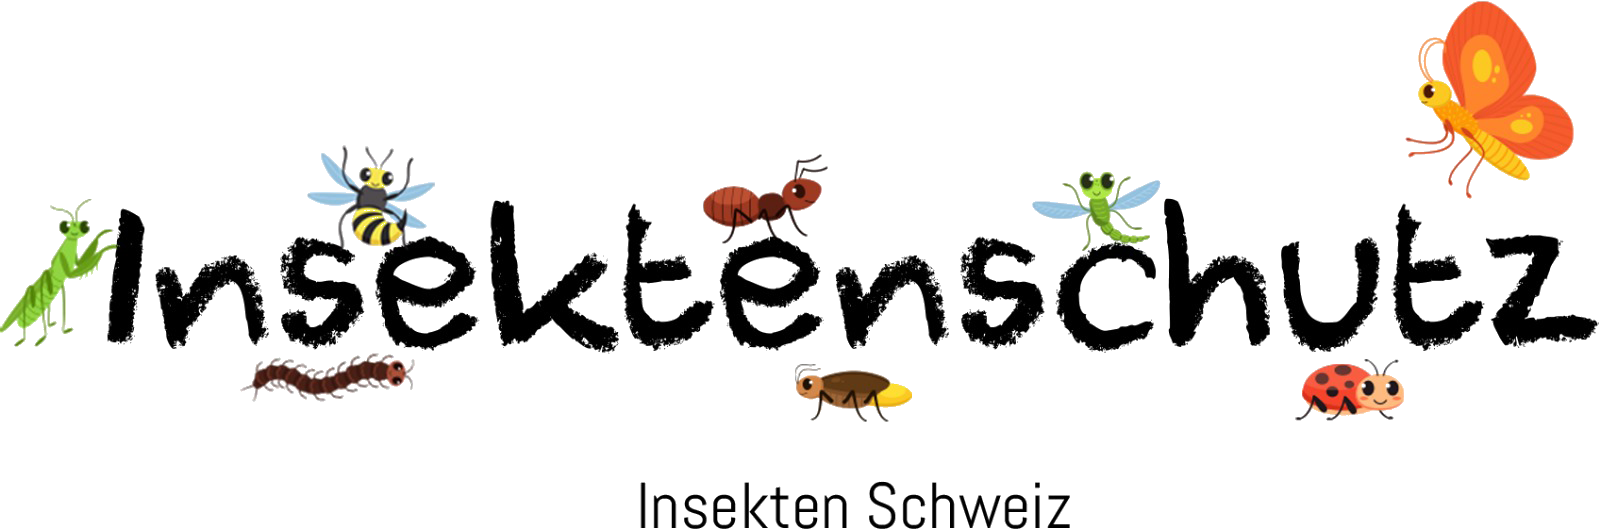 Insektenschutz - antifix GmbH 